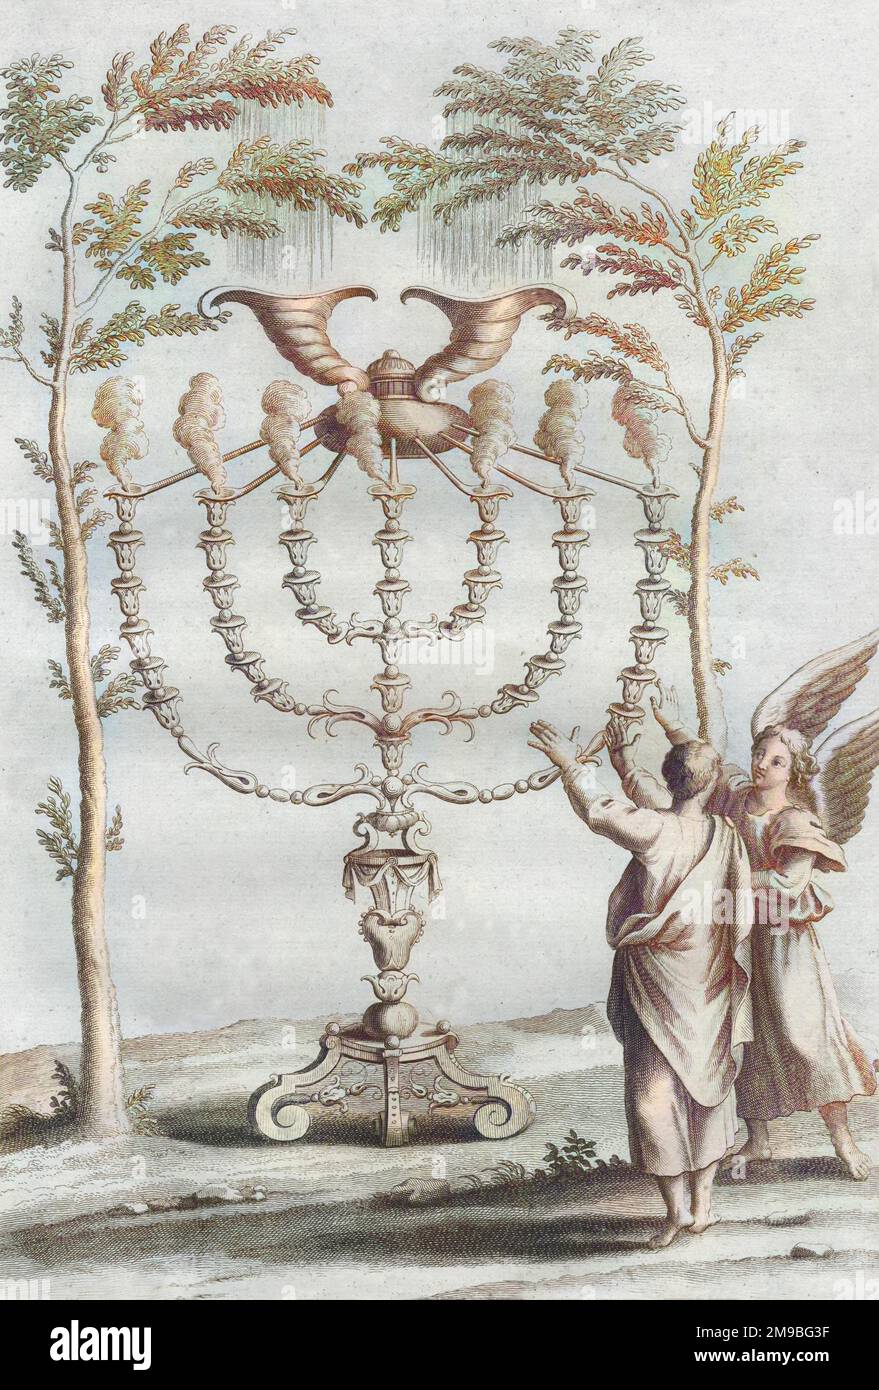 Oggetti cerimoniali : il CANDELABRO D'ORO (Menorah) con sette rami